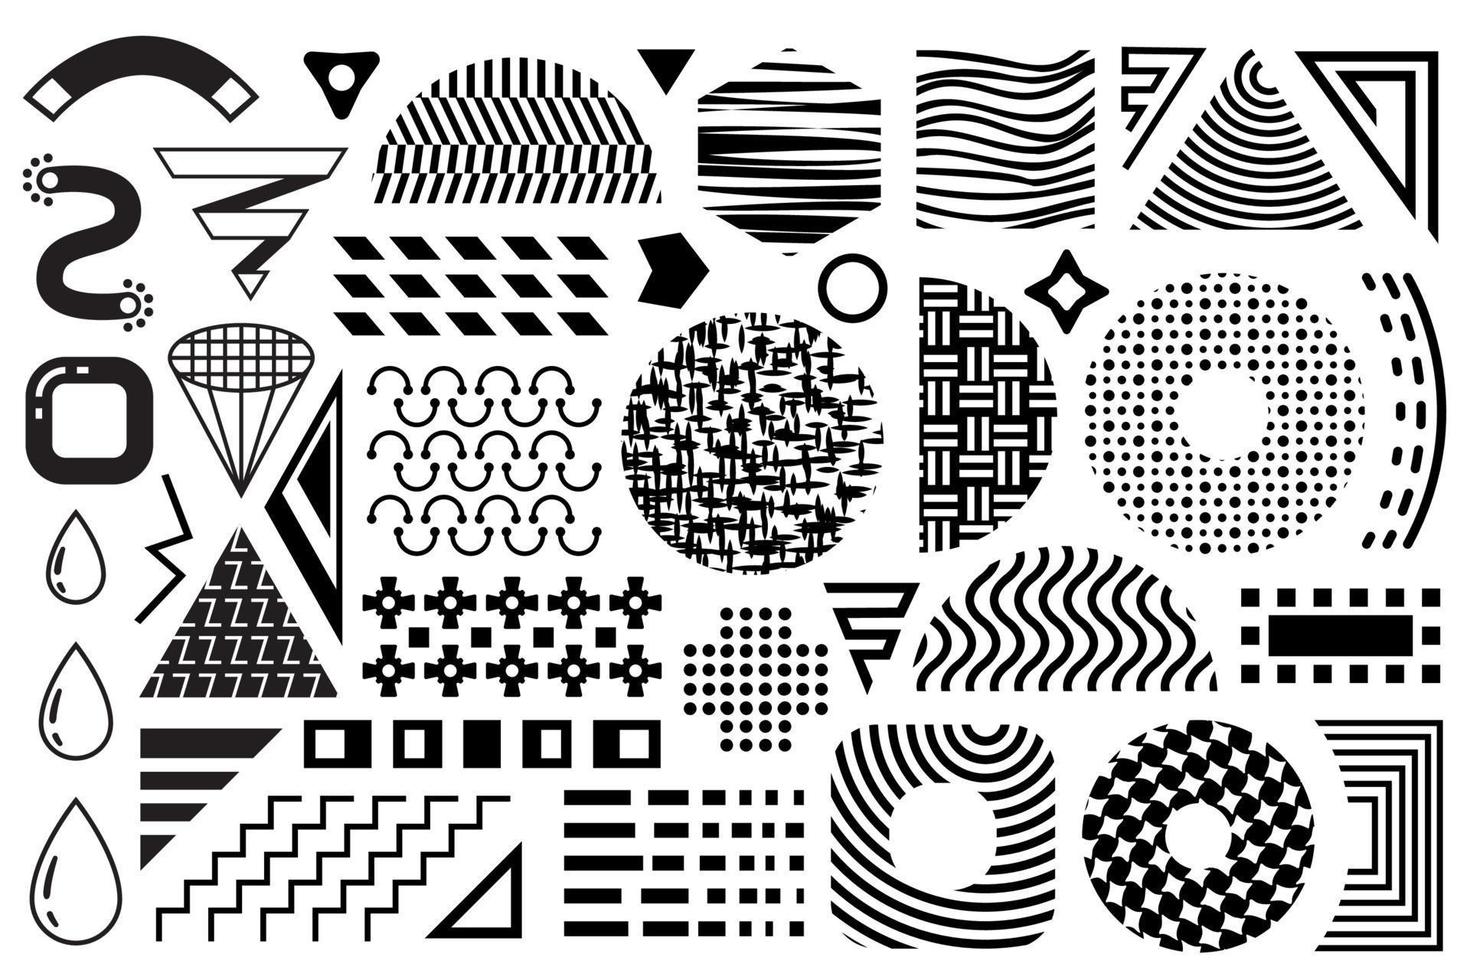 ensemble de memphis vectoriel noir et blanc. collection d'éléments de conception géométrique memphis des années 90. demi-teintes, rayures, motifs plats géométriques, formes abstraites isolées sur fond blanc.